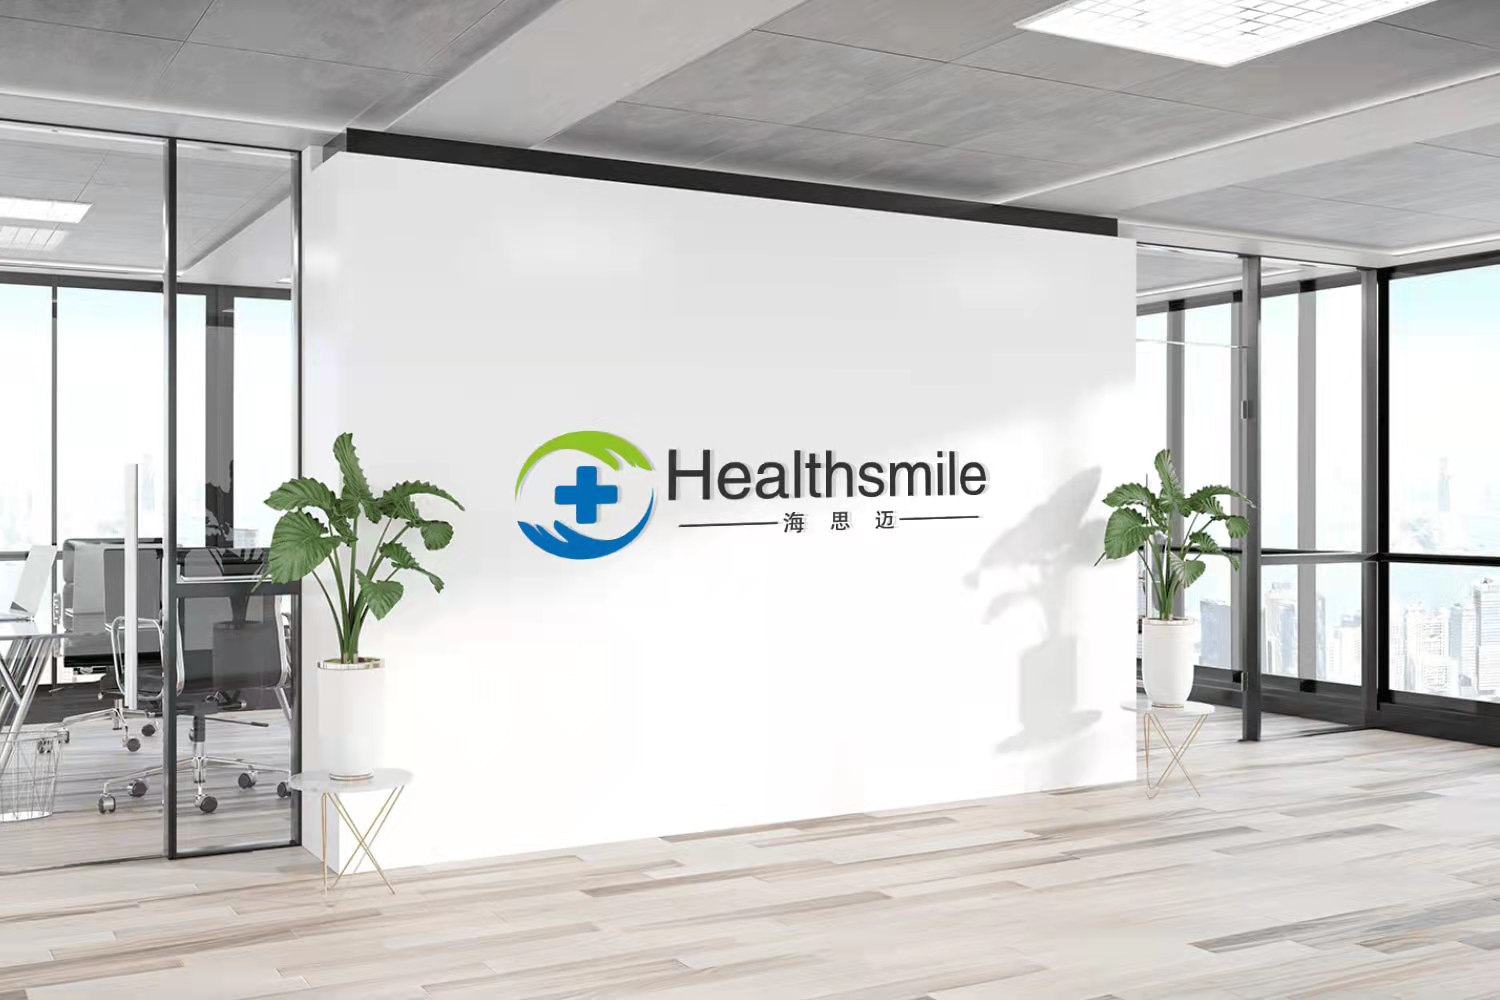 Healthsmile Medical-Zgjedhja më e mirë e mbështjelljes absorbuese të pambukut, copa pambuku absorbuese, pambuku mjekësor dhe pambuku kozmetik